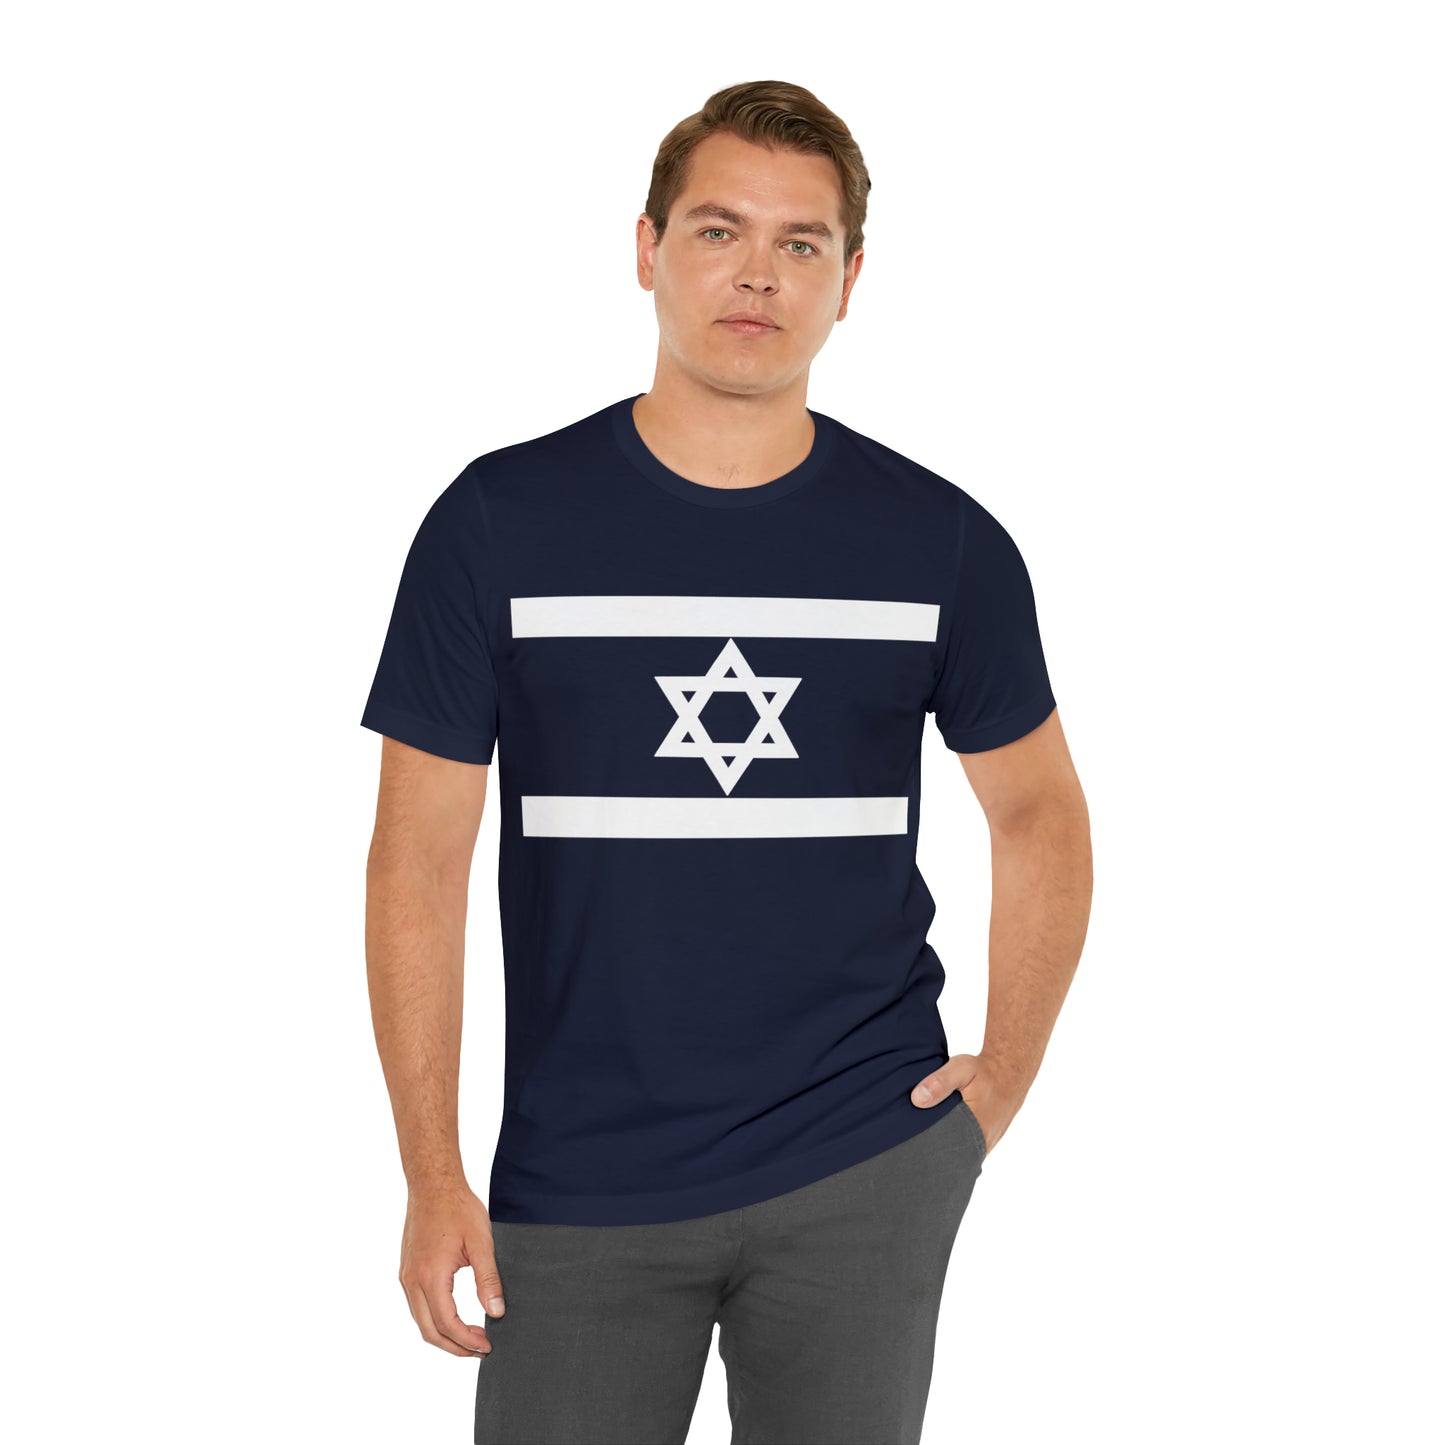 Israel Star (Magen David) Unisex Jersey Short Sleeve Tee